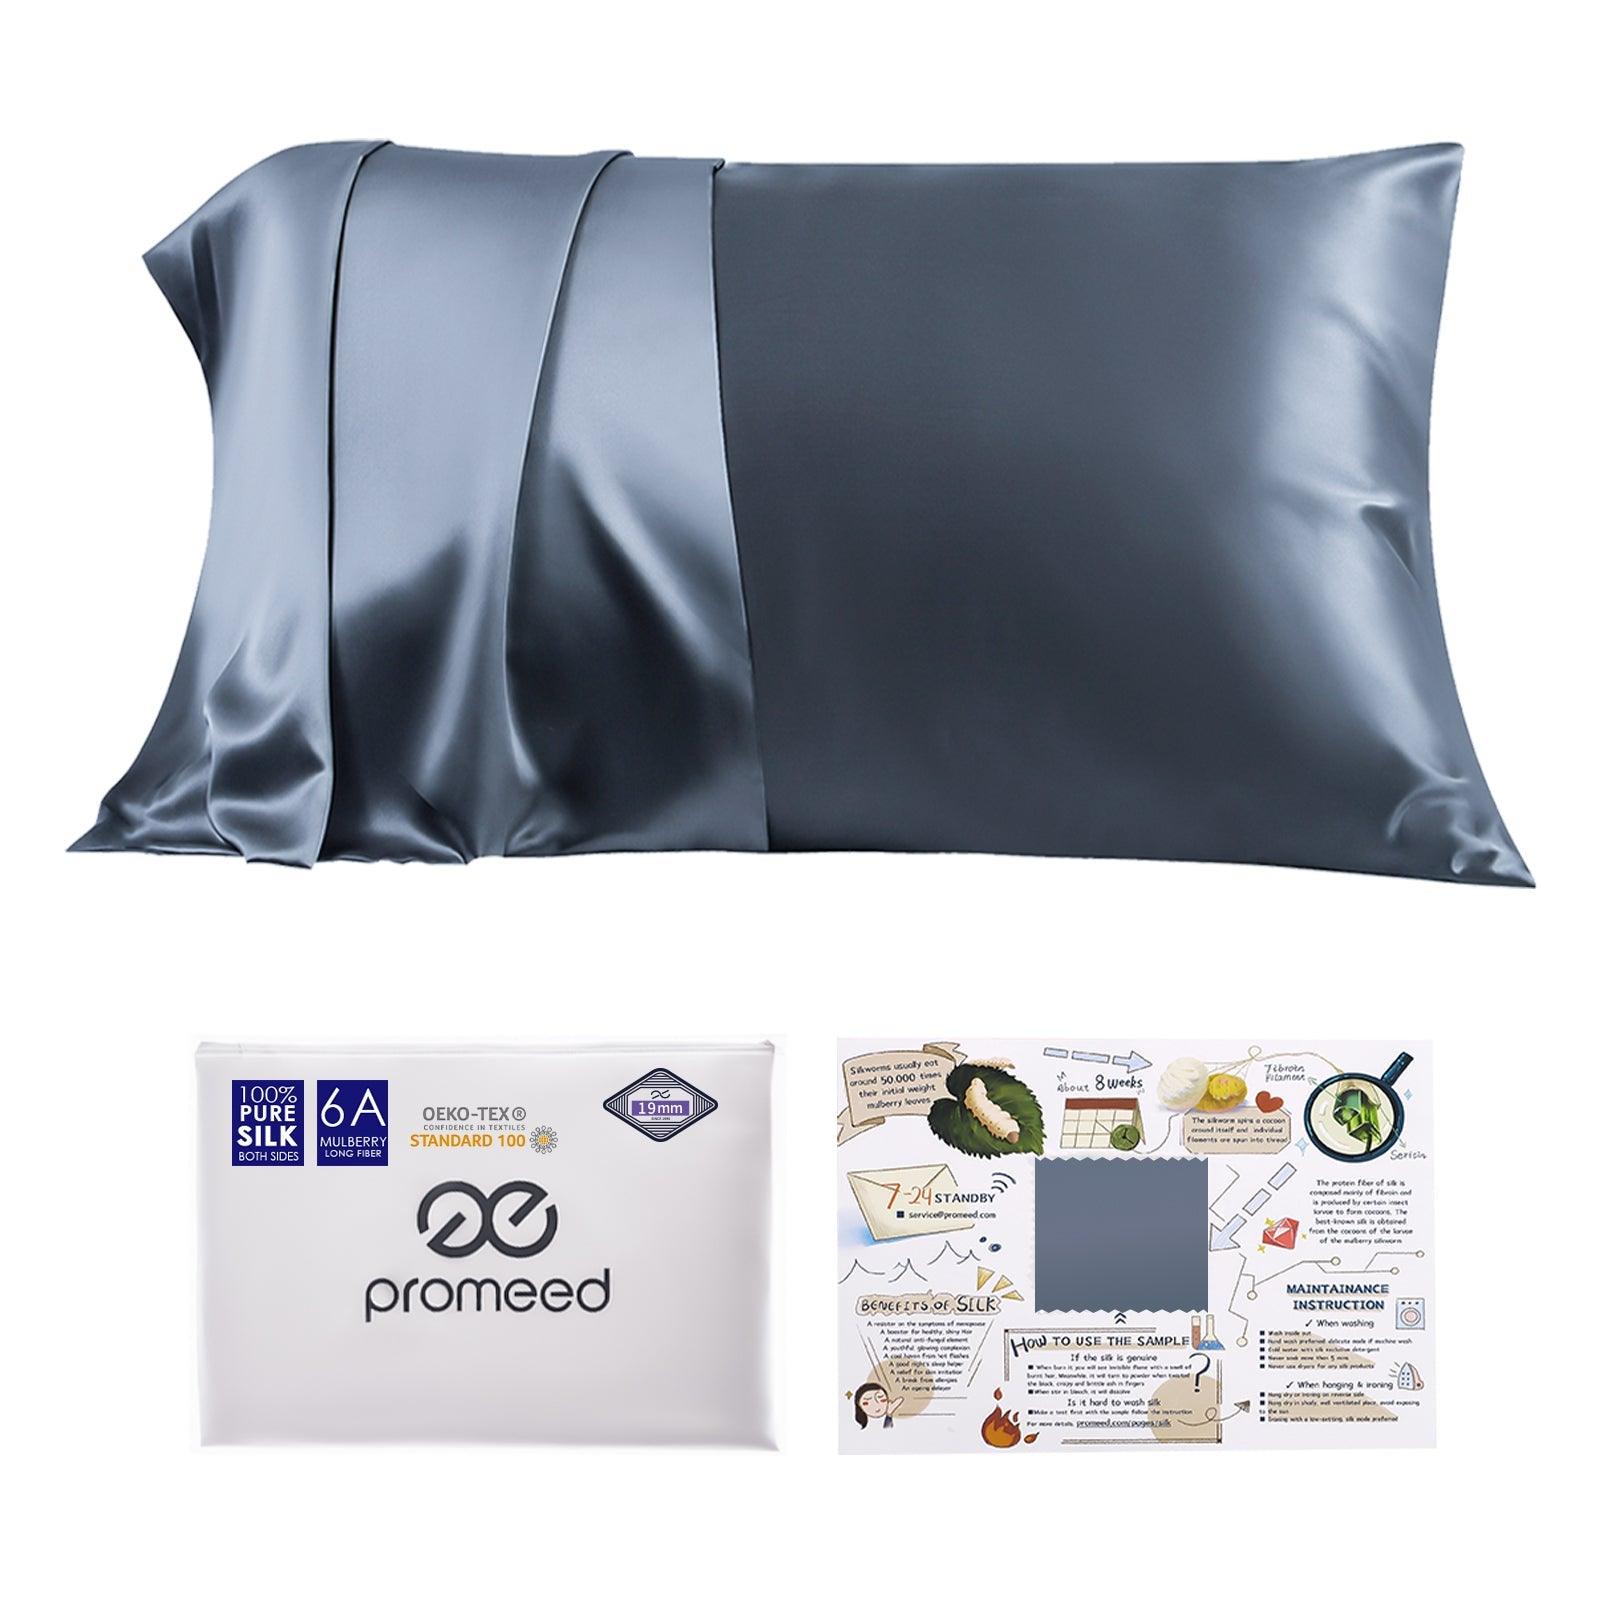 6A Mulberry Silk Pillow Cover - promeedsilk